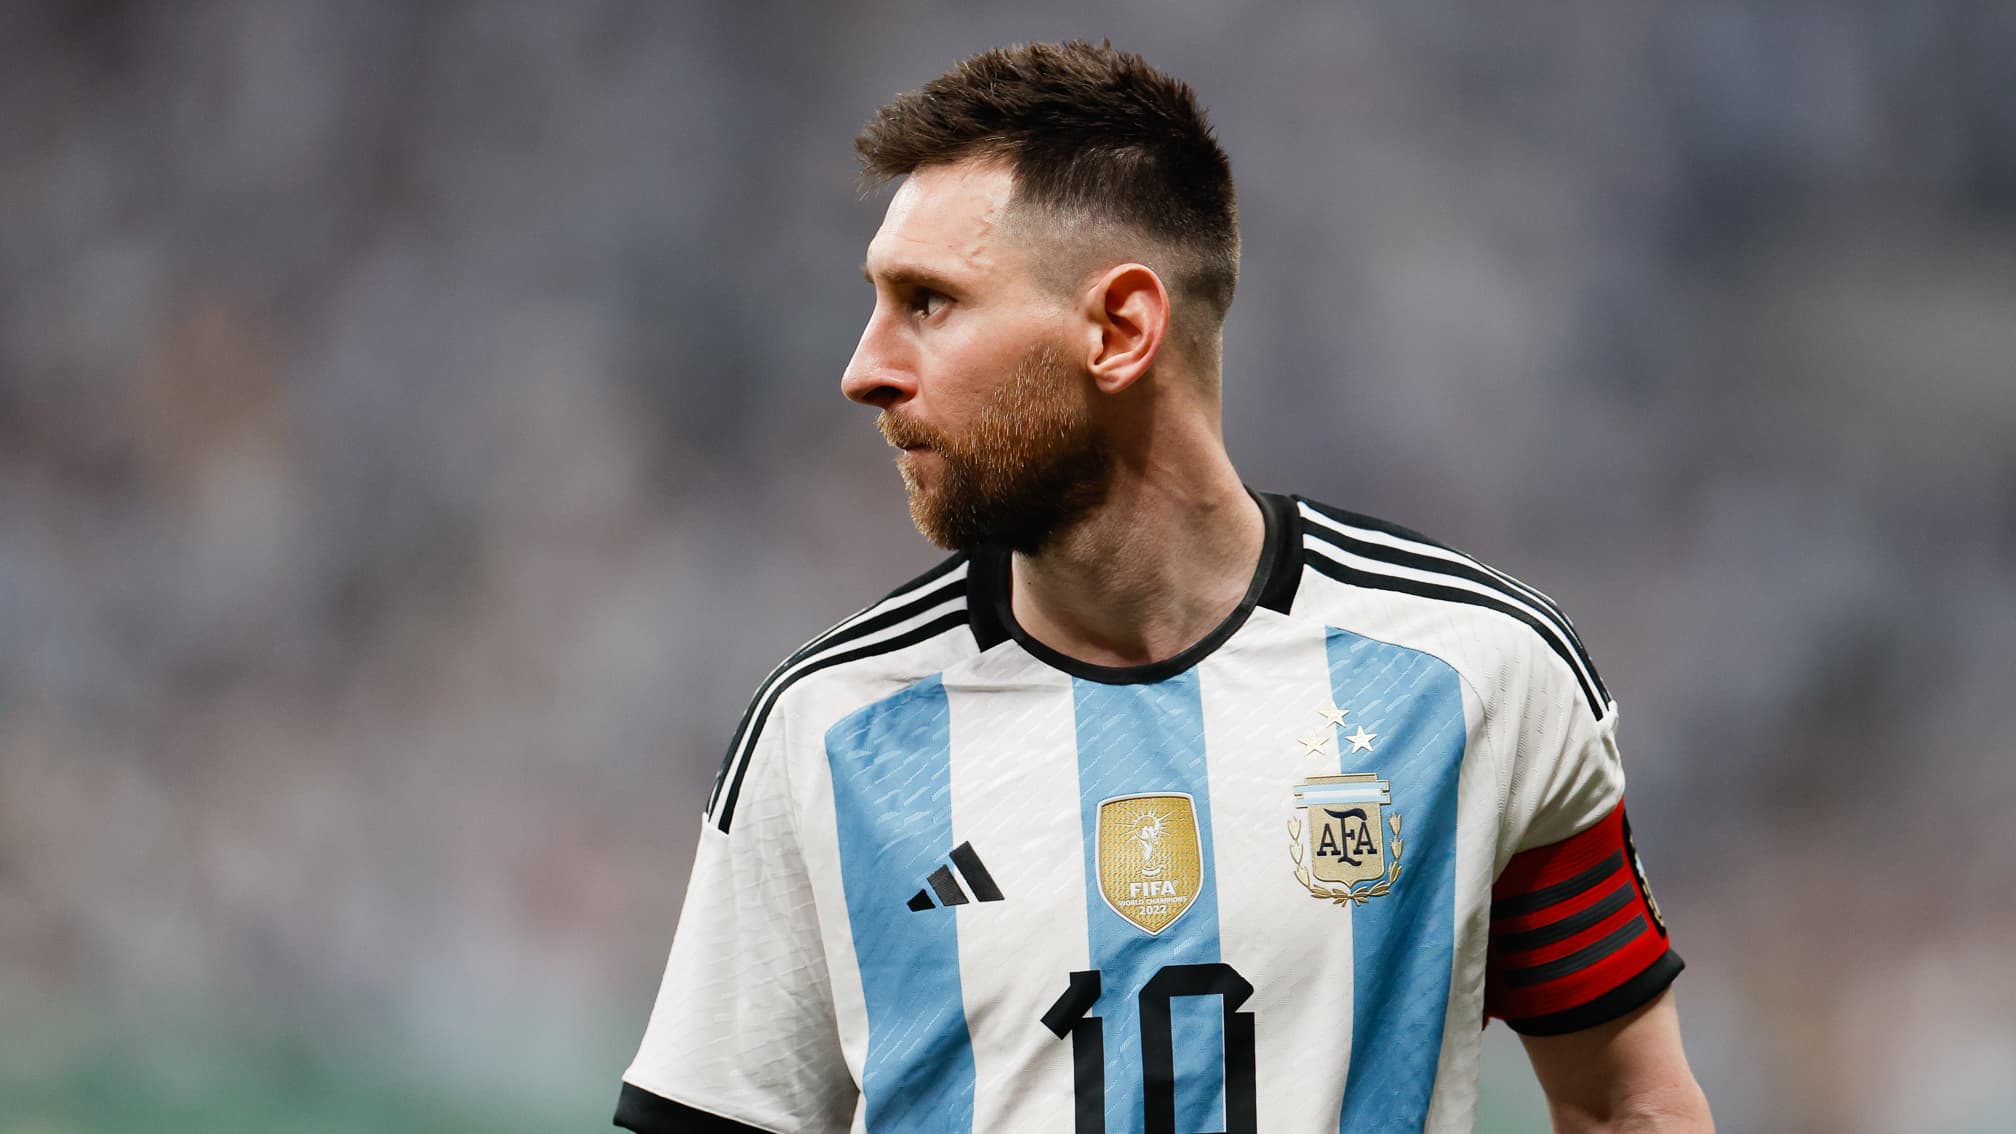 Messi todavía lleva la cinta de la suerte que le regaló un periodista en el Mundial 2018